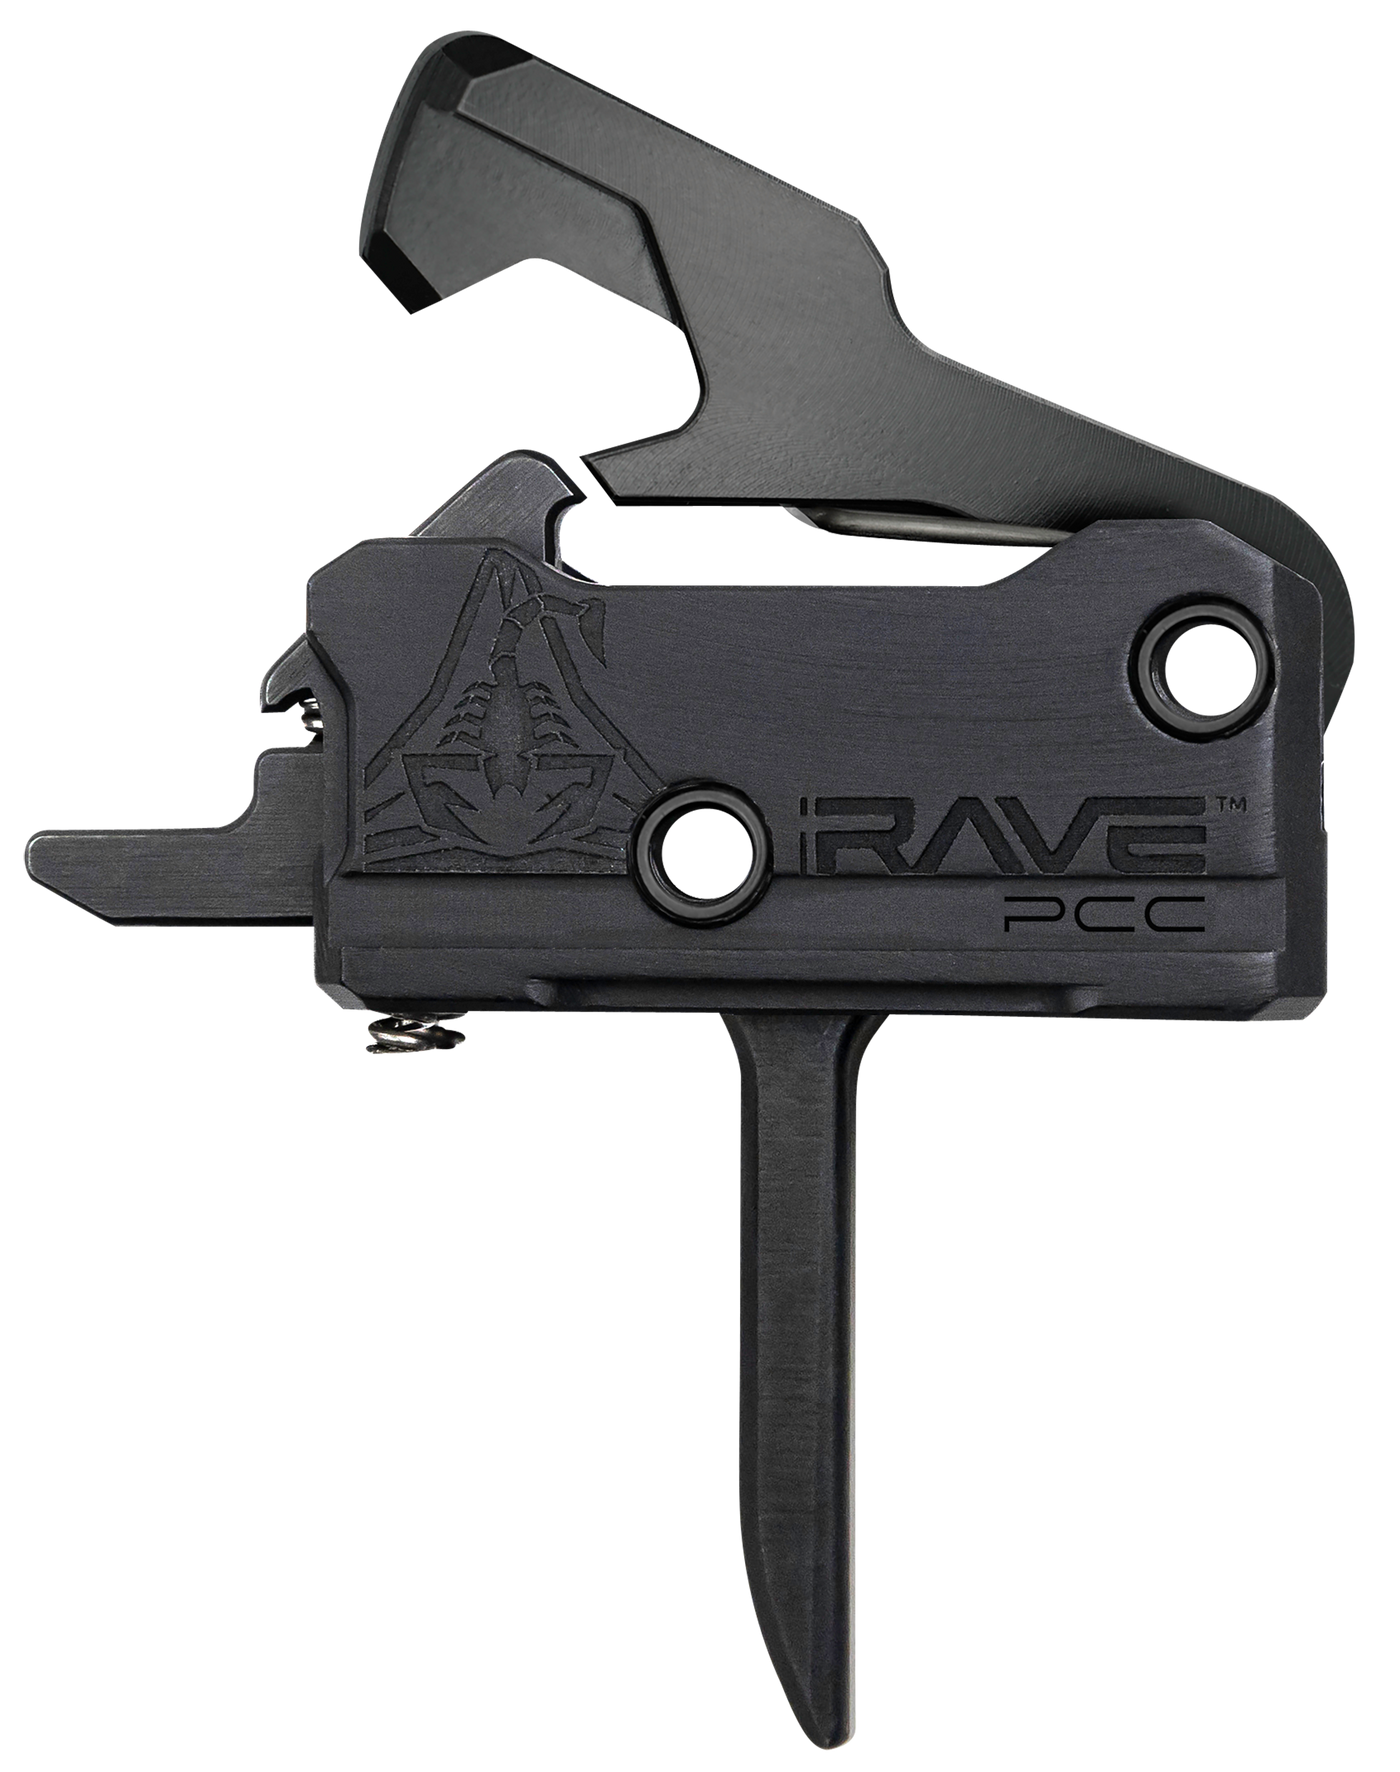 Rise Trigger Rave Pcc Flat - 3.5lb Ar-15 W/anti Walk Pins